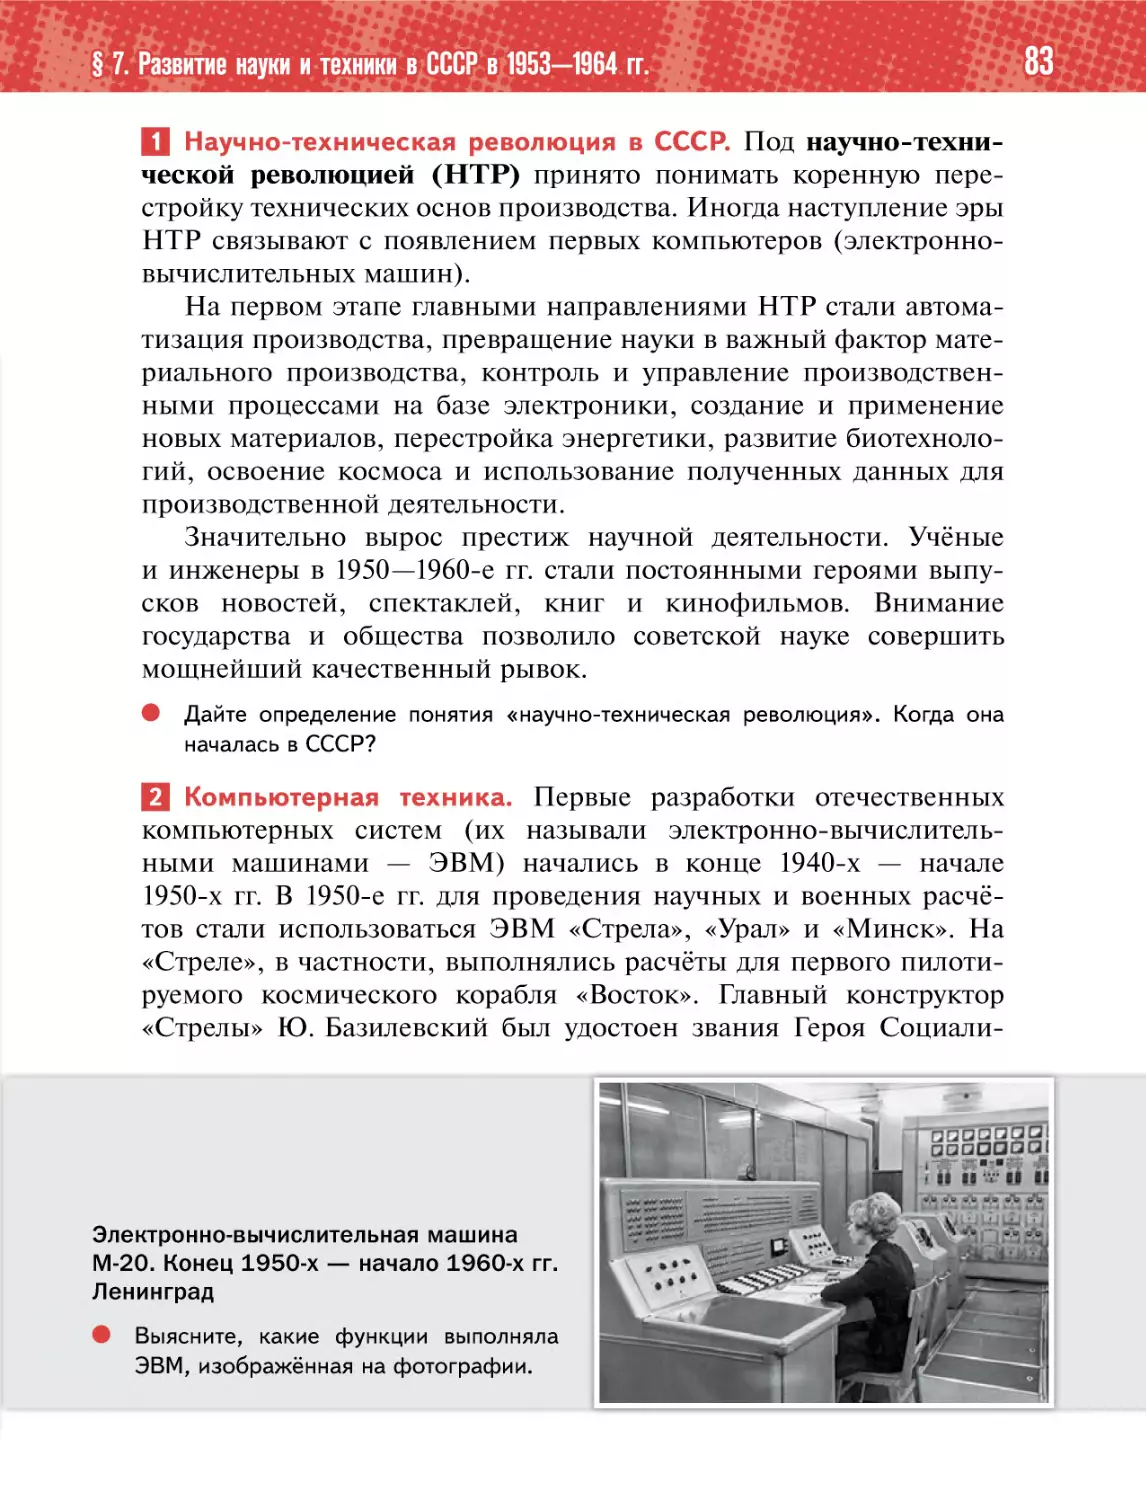 1 Научно-техническая революция в СССР.
2 Компьютерная техника.